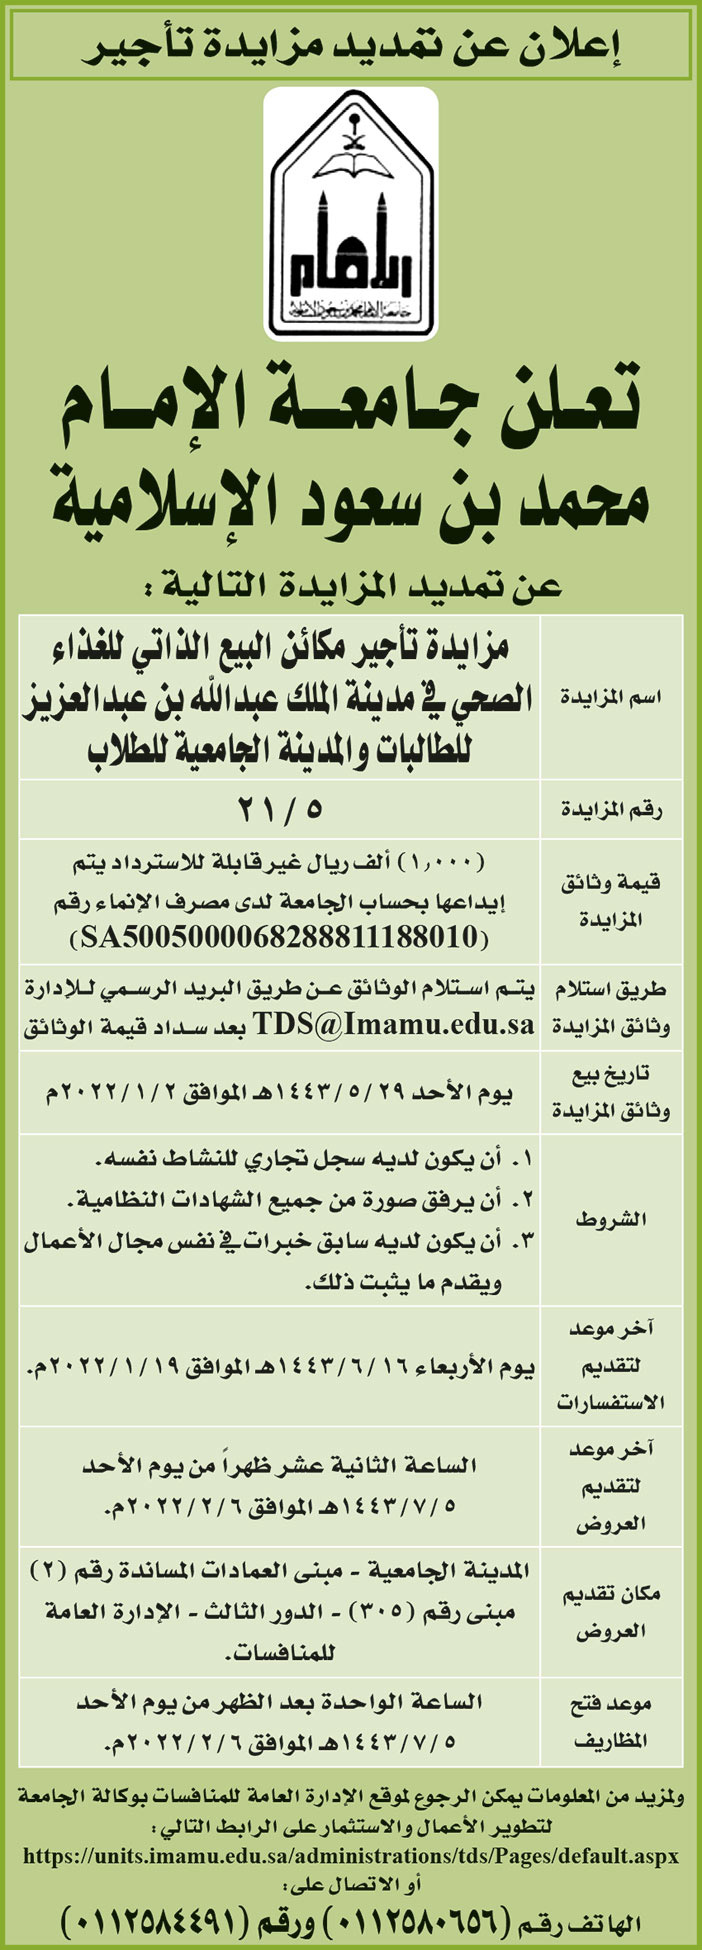 جامعة الإمام محمد بن سعود الإسلامية تمدد المزايدة لتأجير مكائن البيع الذاتي للغذاء الصحي في مدينة الملك عبدالله ابن عبدالعزيز للطالبات والمدينة الجامعية للطلاب 